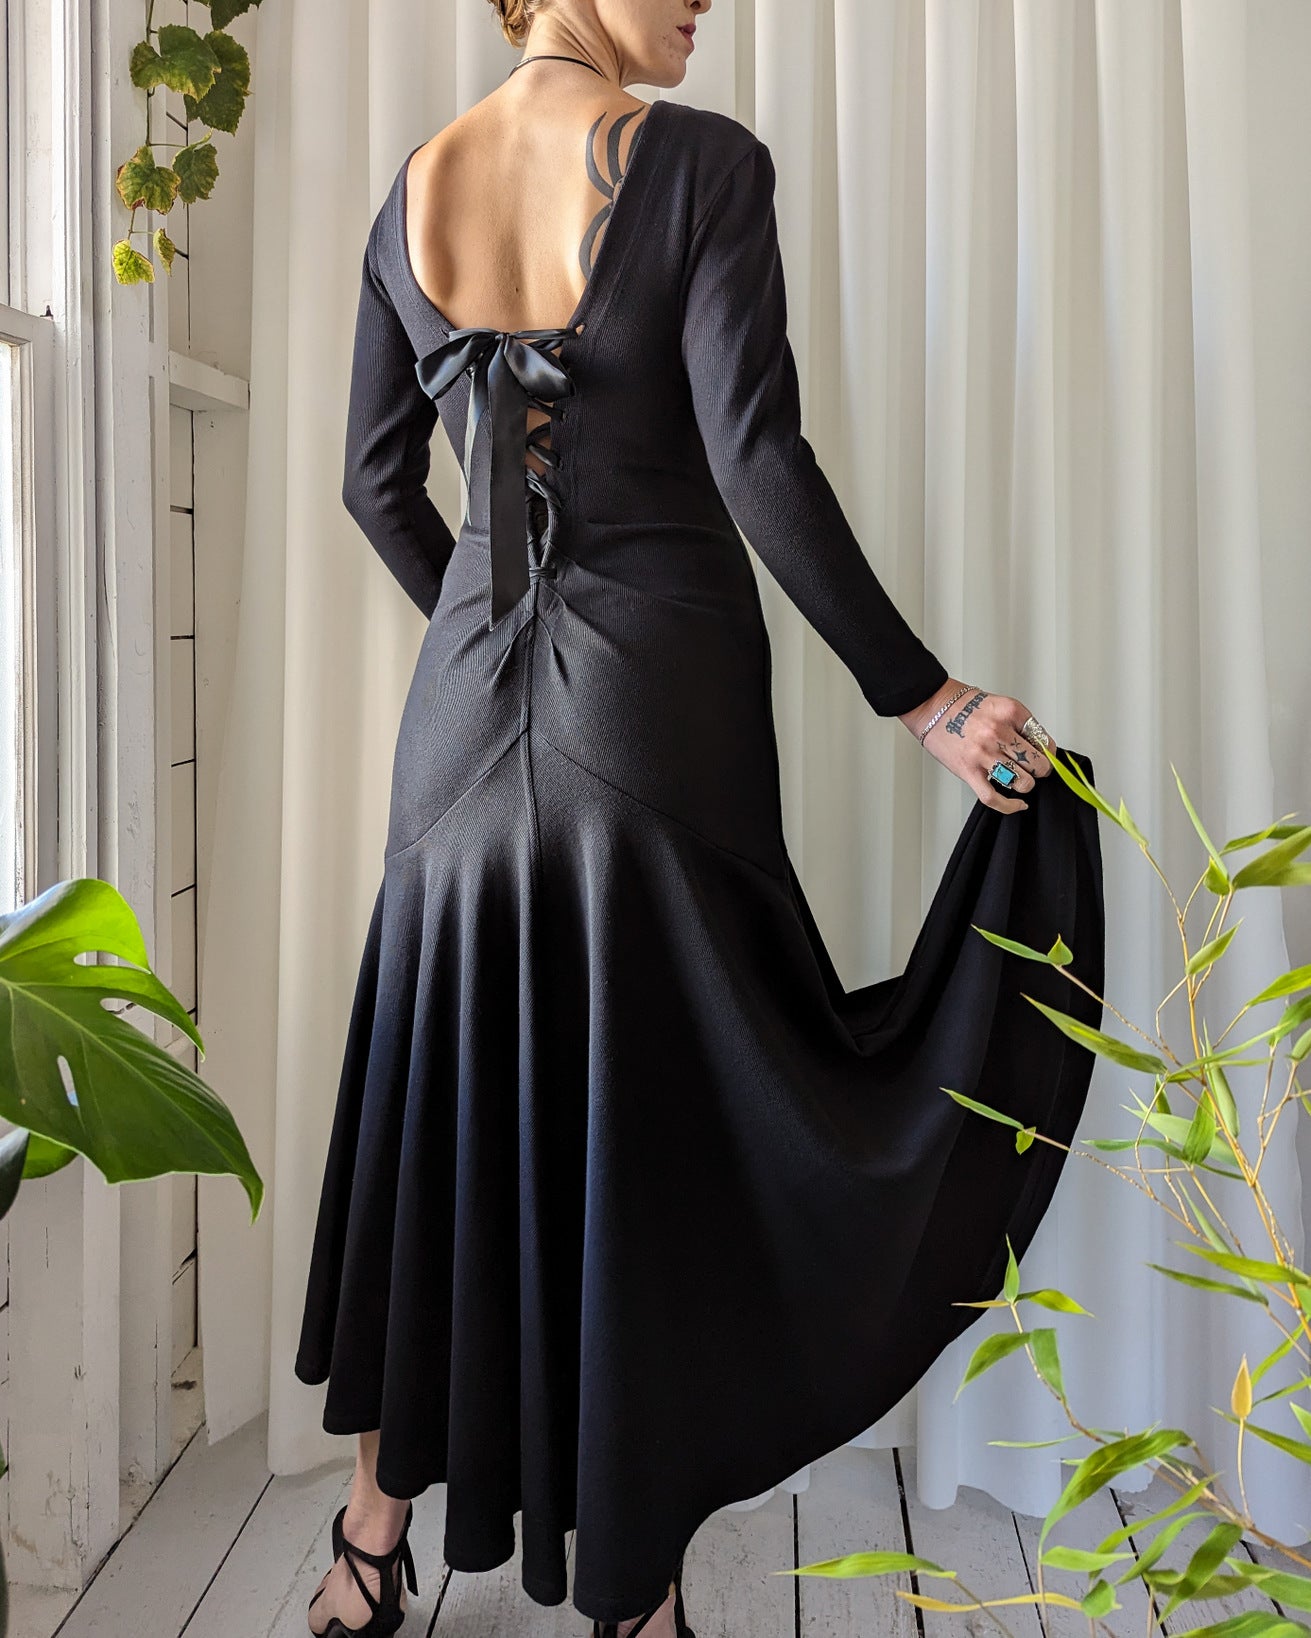 https://luckyvintageseattle.com/cdn/shop/files/lucky-vintage-seattle-1980s-karen-alexander-corset-lace-up-back-dress_3_1311x.jpg?v=1699049690